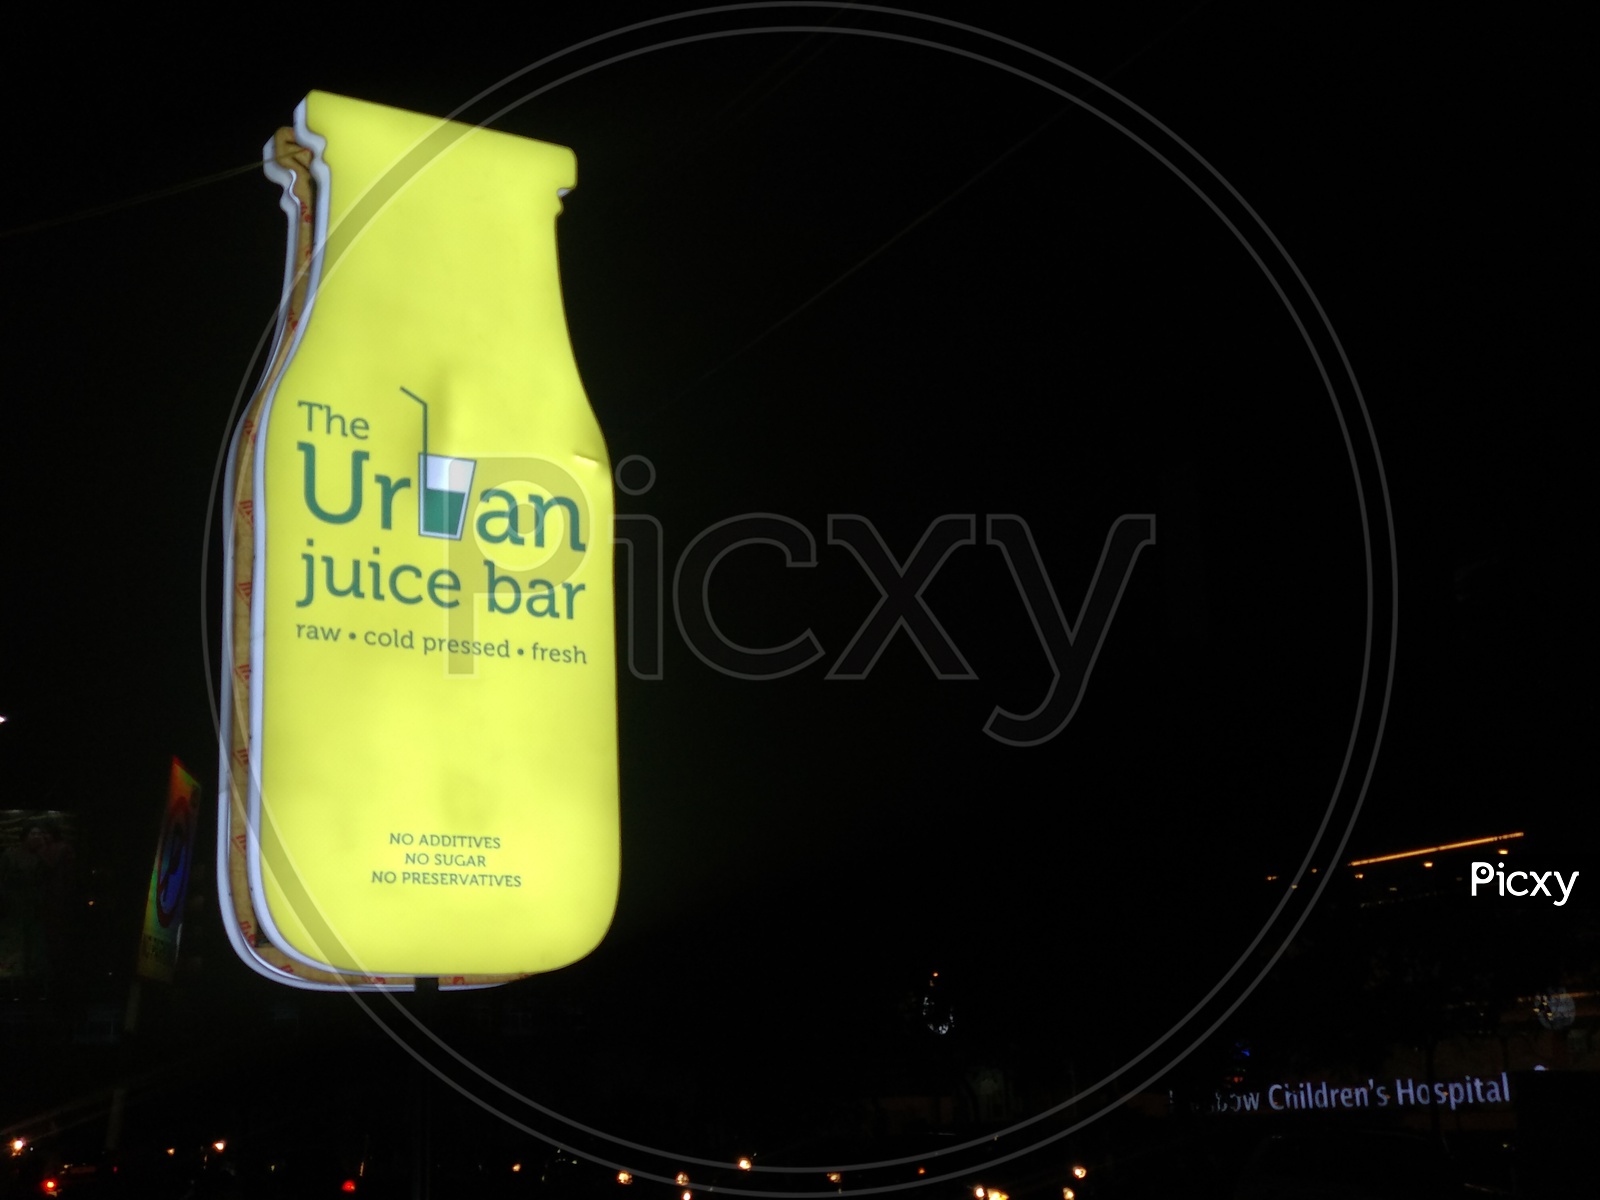 The urban juice bar